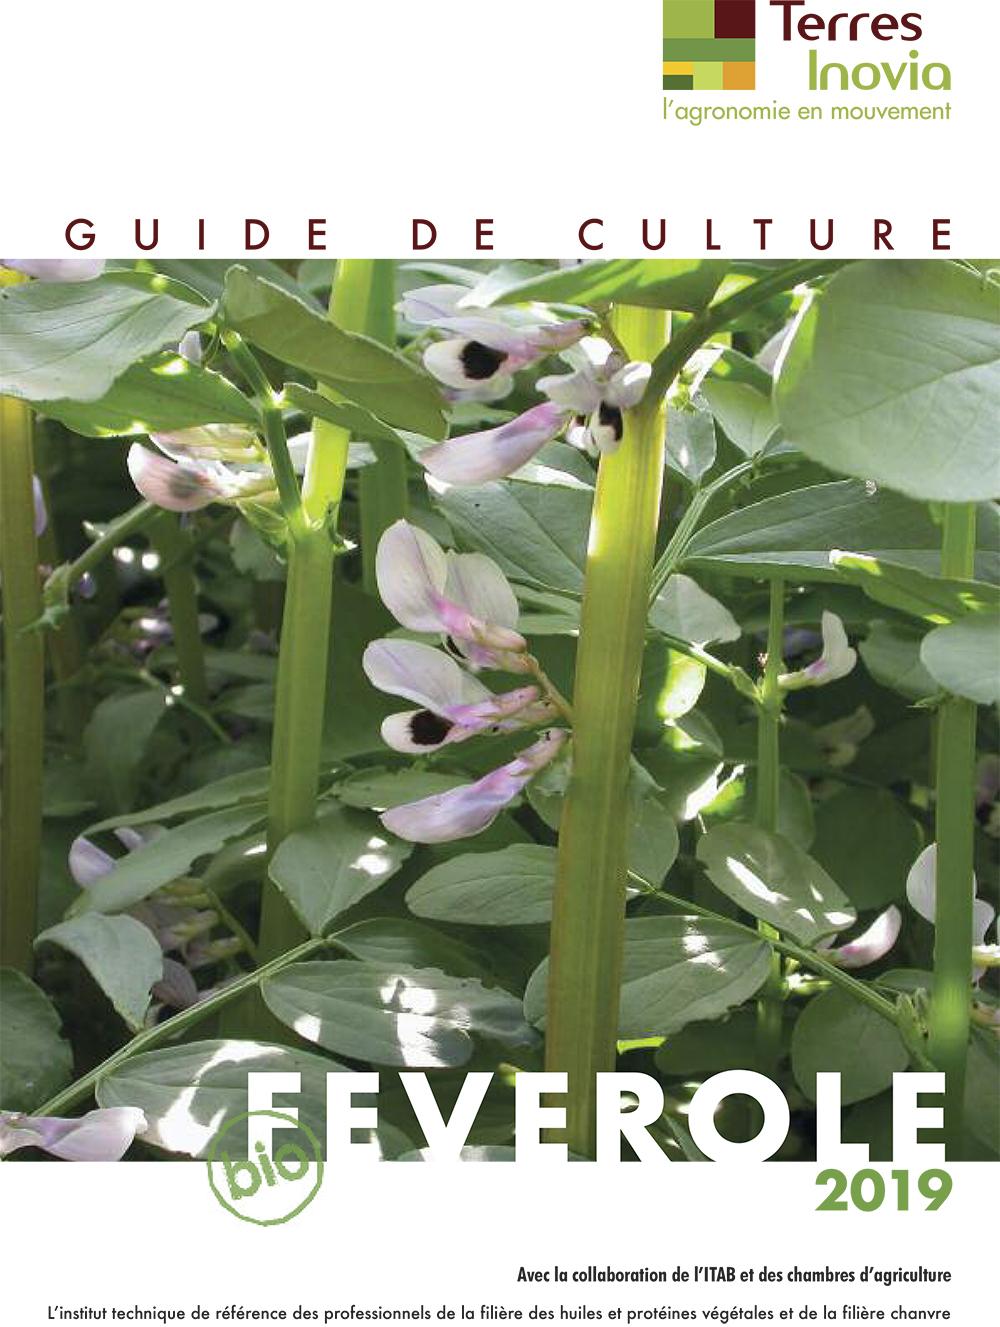 Guide de culture féverole bio 2019